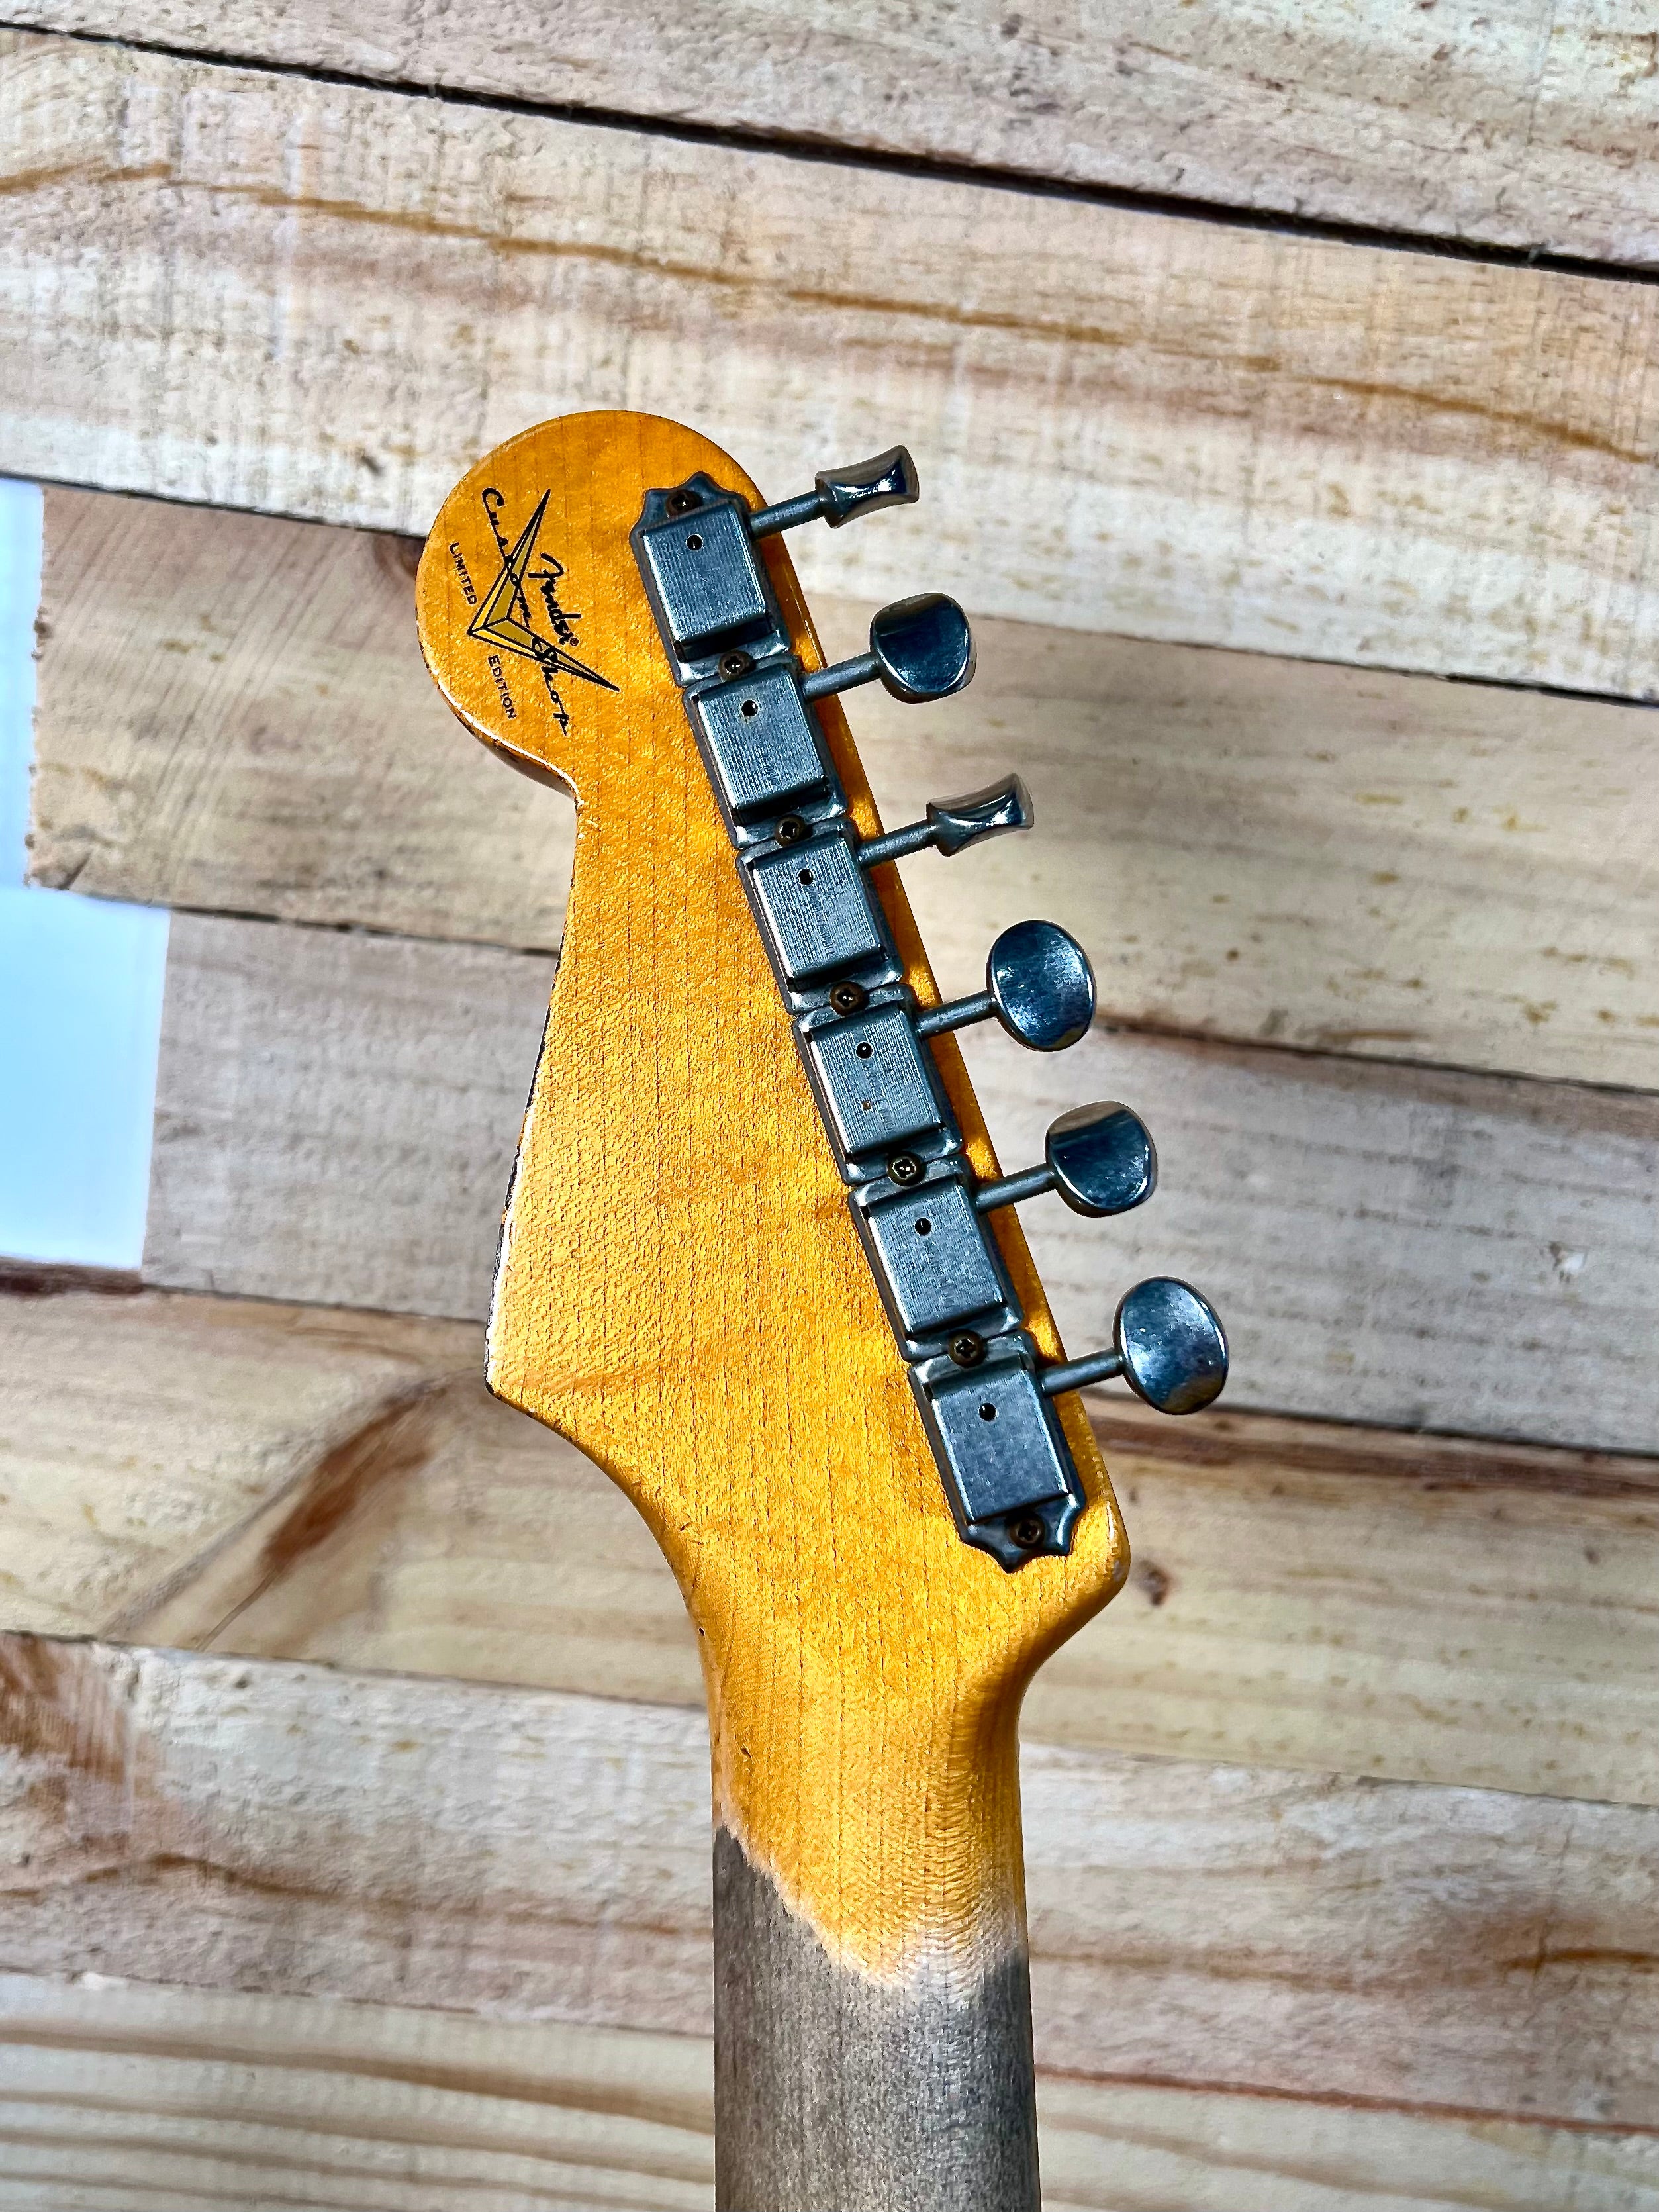 Fender Stratocaster Custom Shop Black Lightning 2017